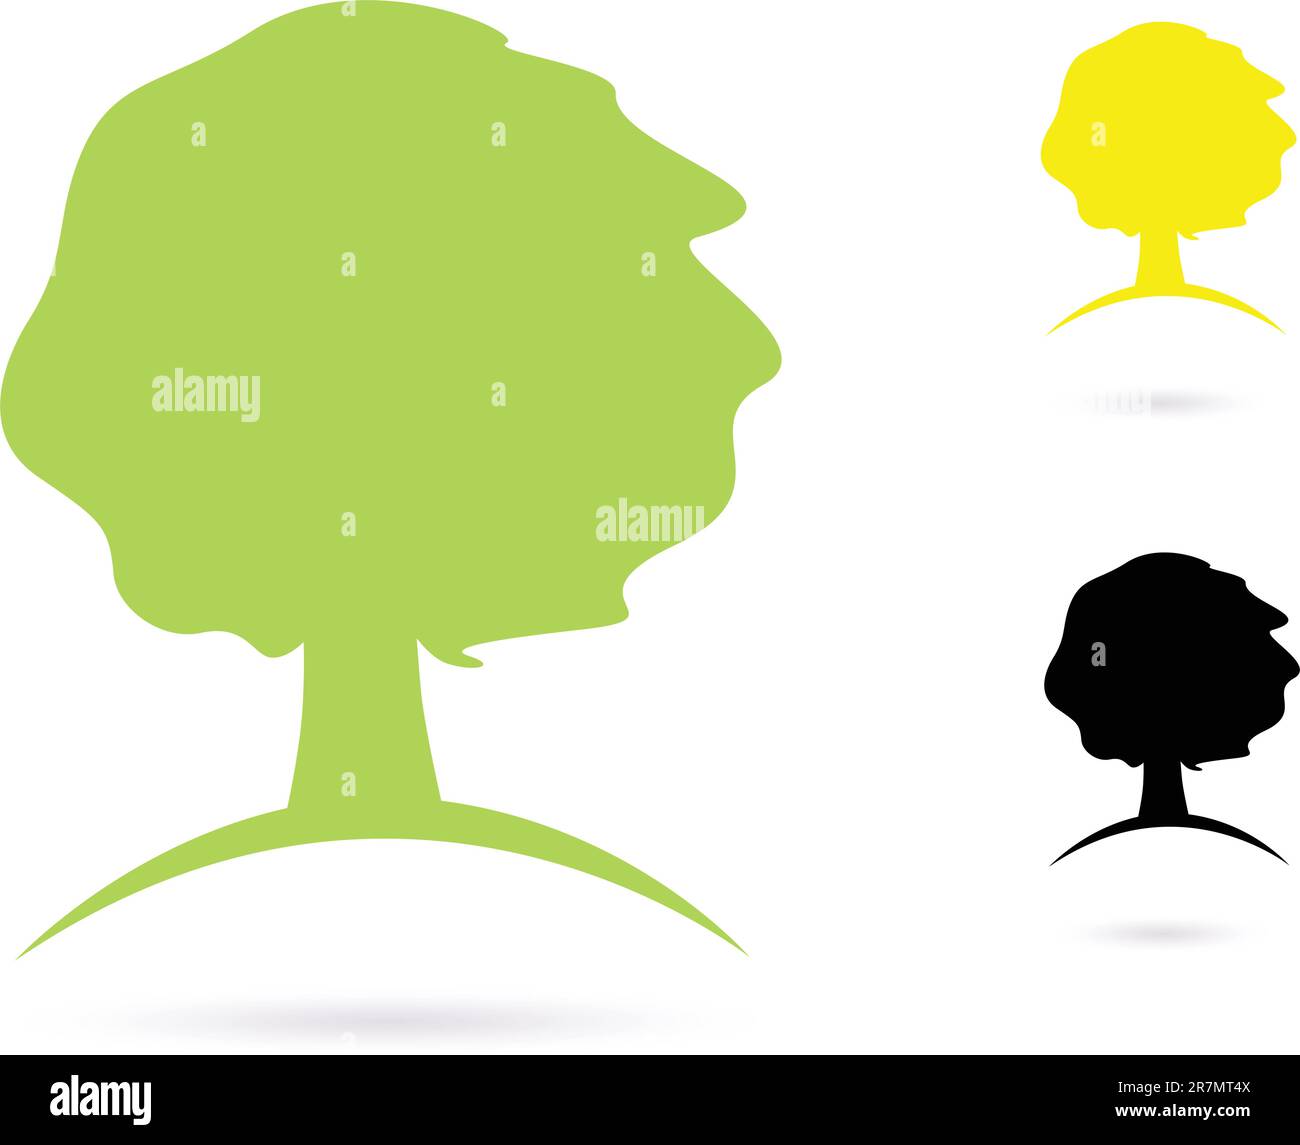 Vector natural signo de árbol fuerte o icono - verde, amarillo y negro Ilustración del Vector